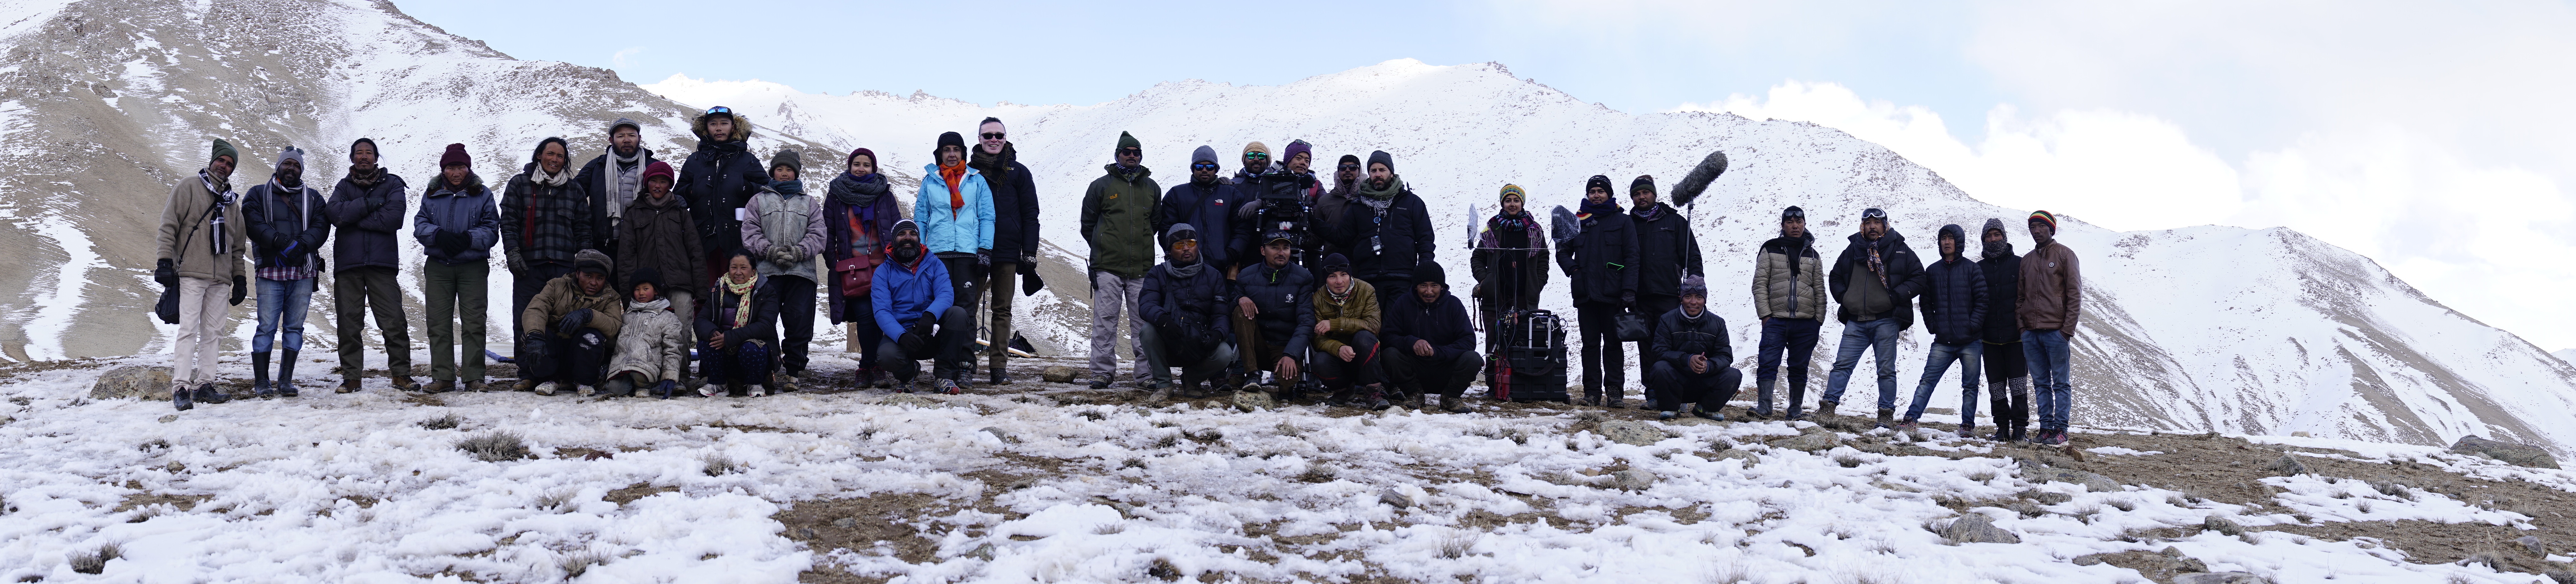 Cast & Crew, Ladakh (Photo: Pablo Bartholomew)